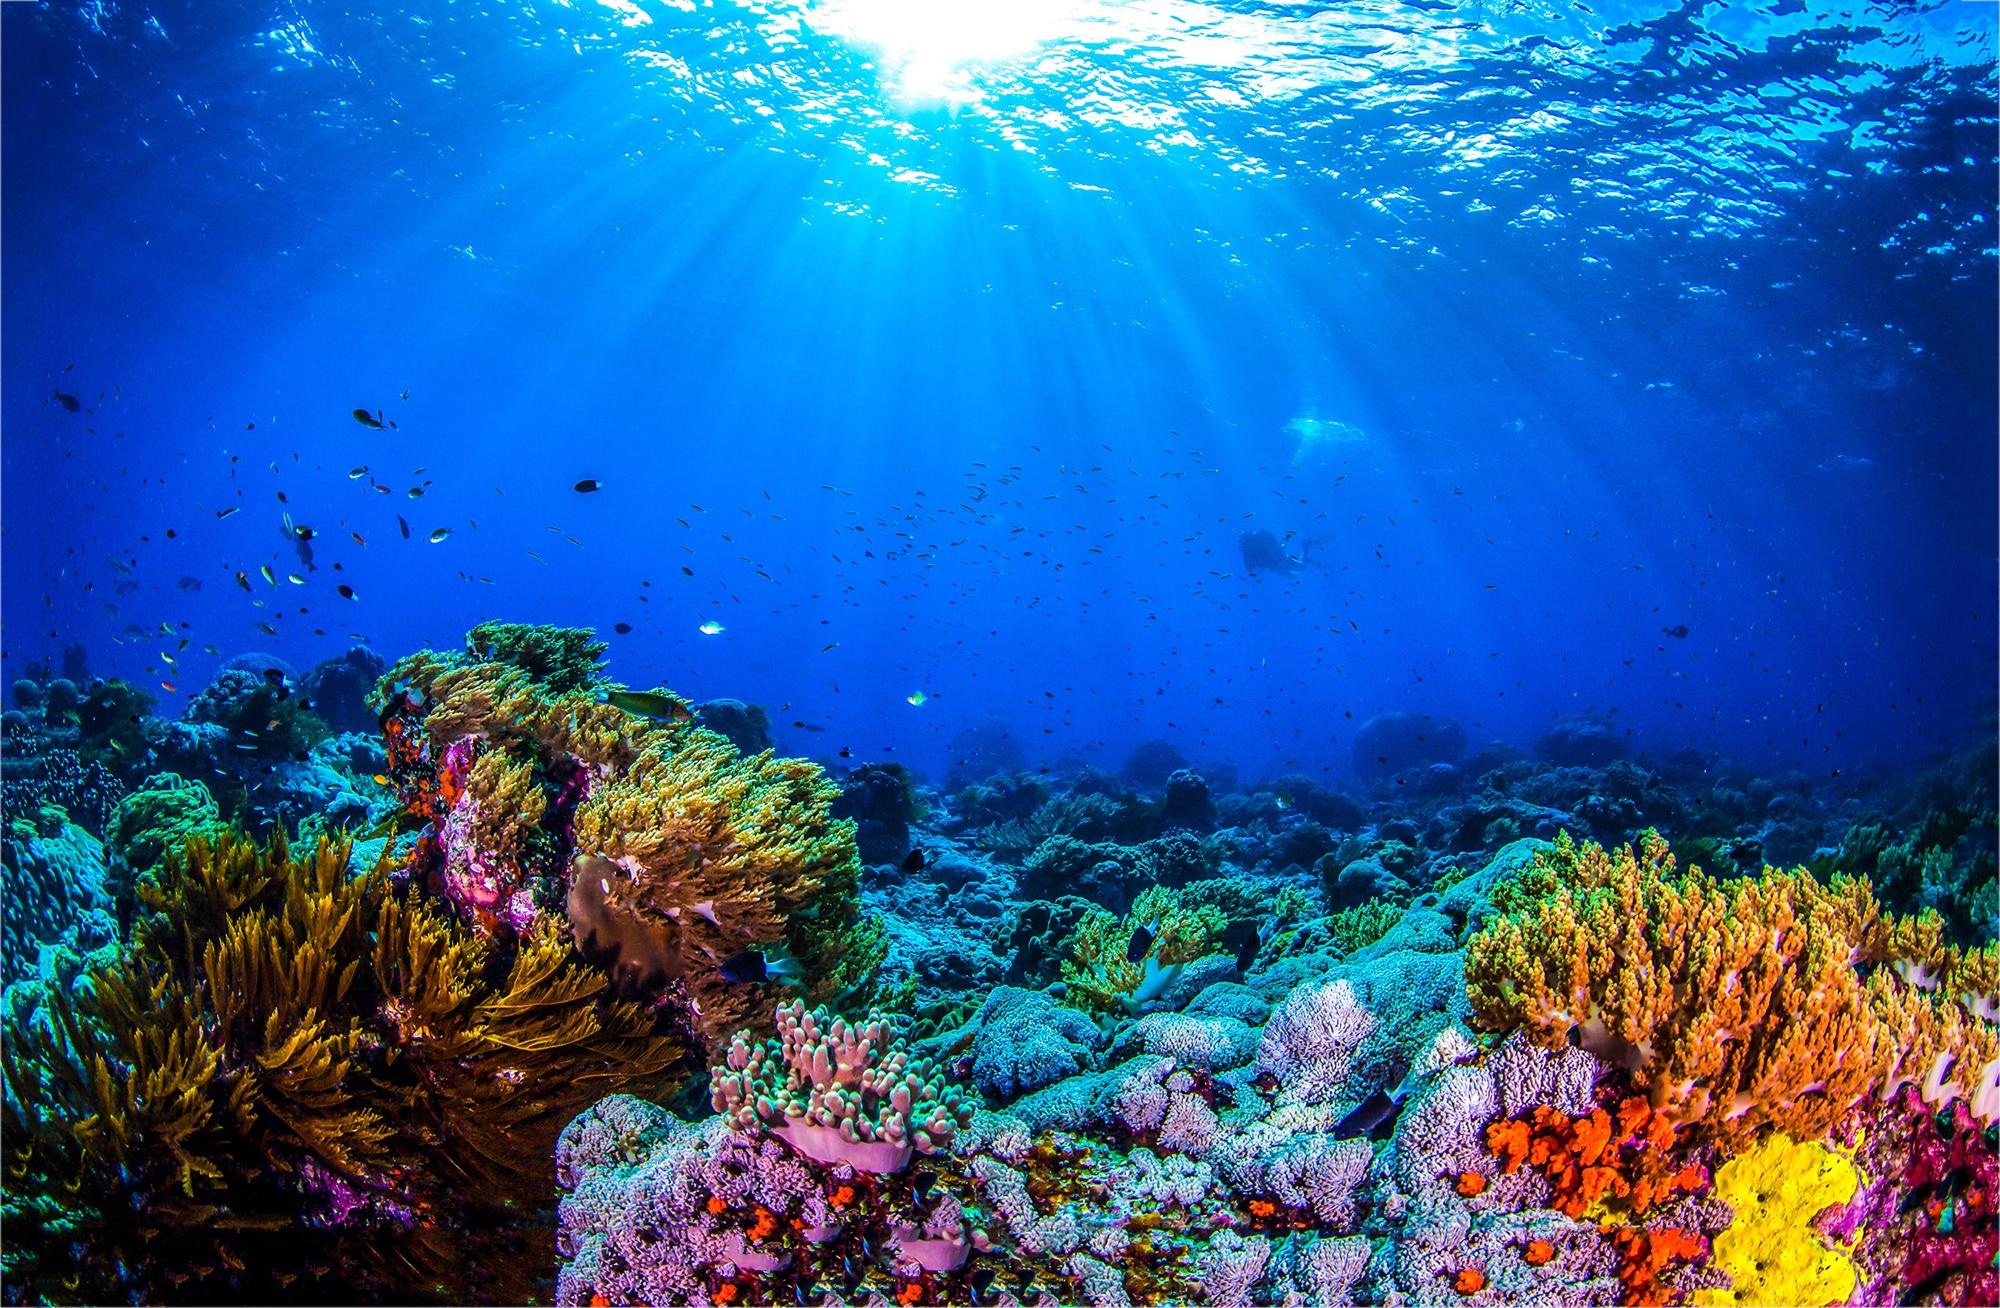 Underwater Loudspeakers are Making Fish Flock Back to Coral Reefs